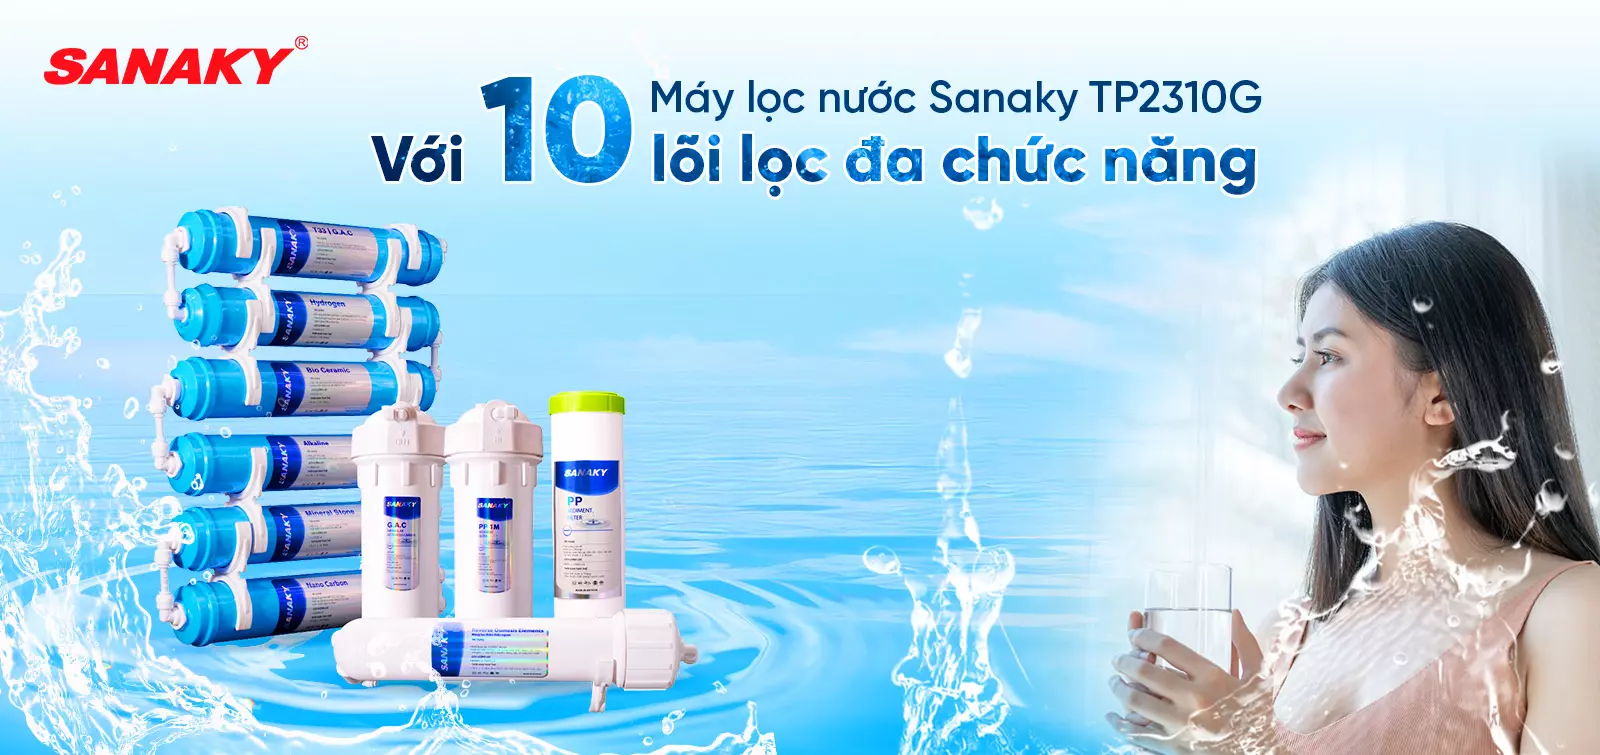 Máy lọc nước Sanaky TN2310G với 10 lõi lọc đa chức năng